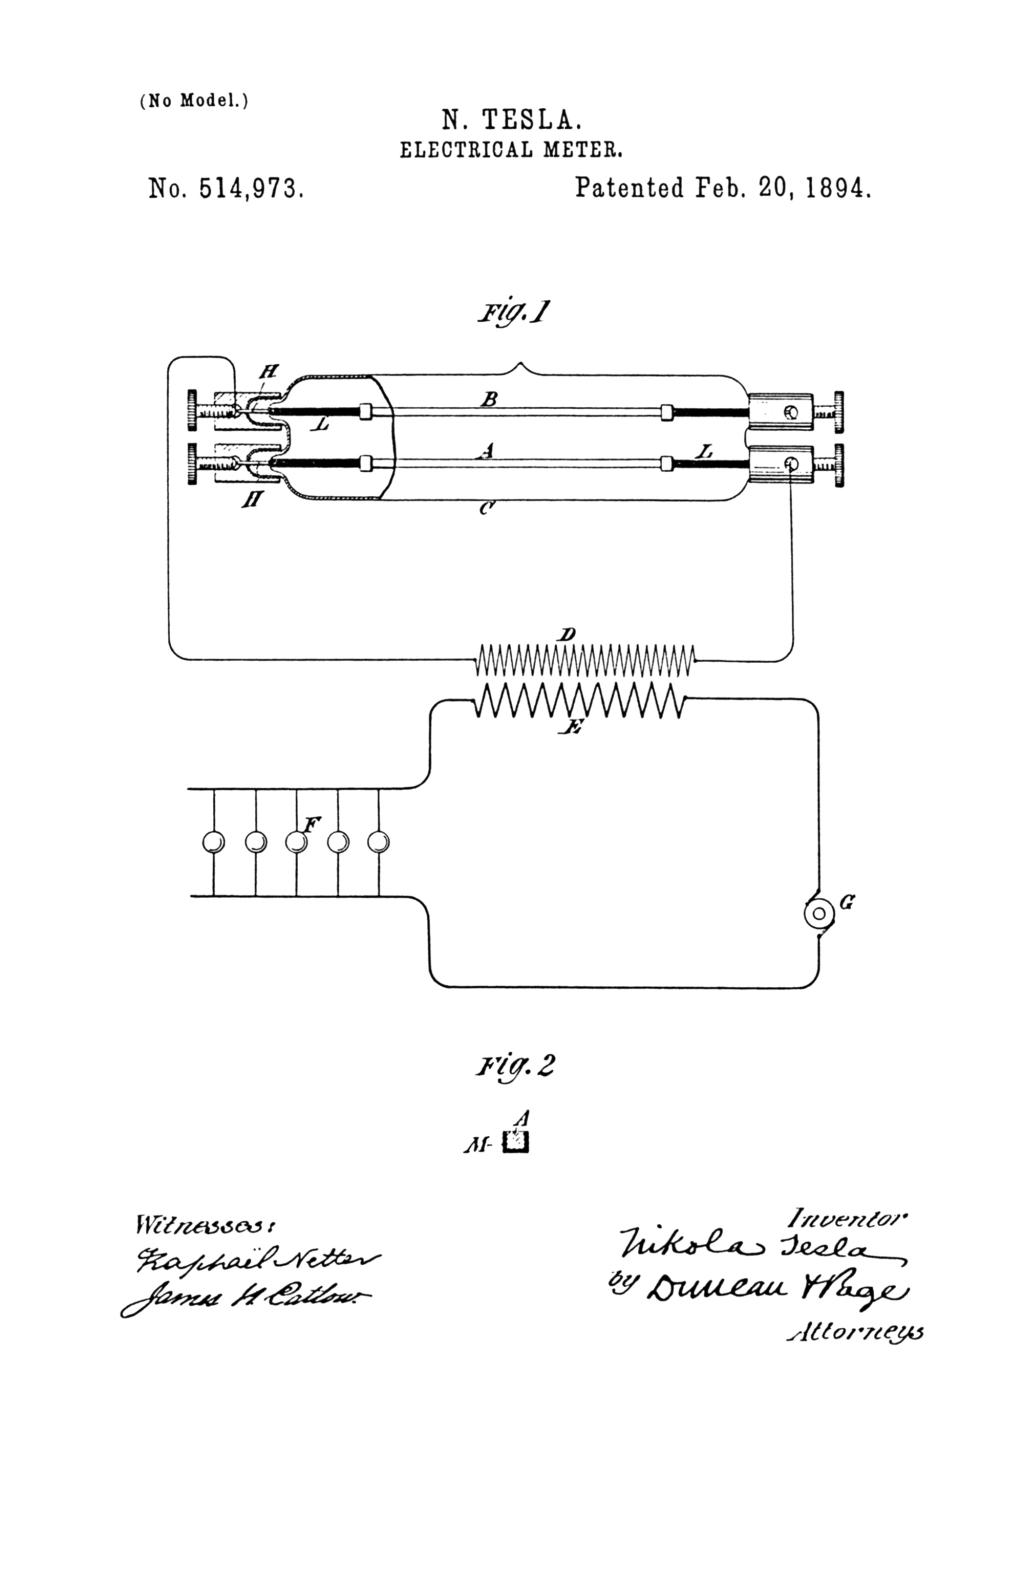 Nikola Tesla U.S. Patent 514,973 - Electrical Meter - Image 1